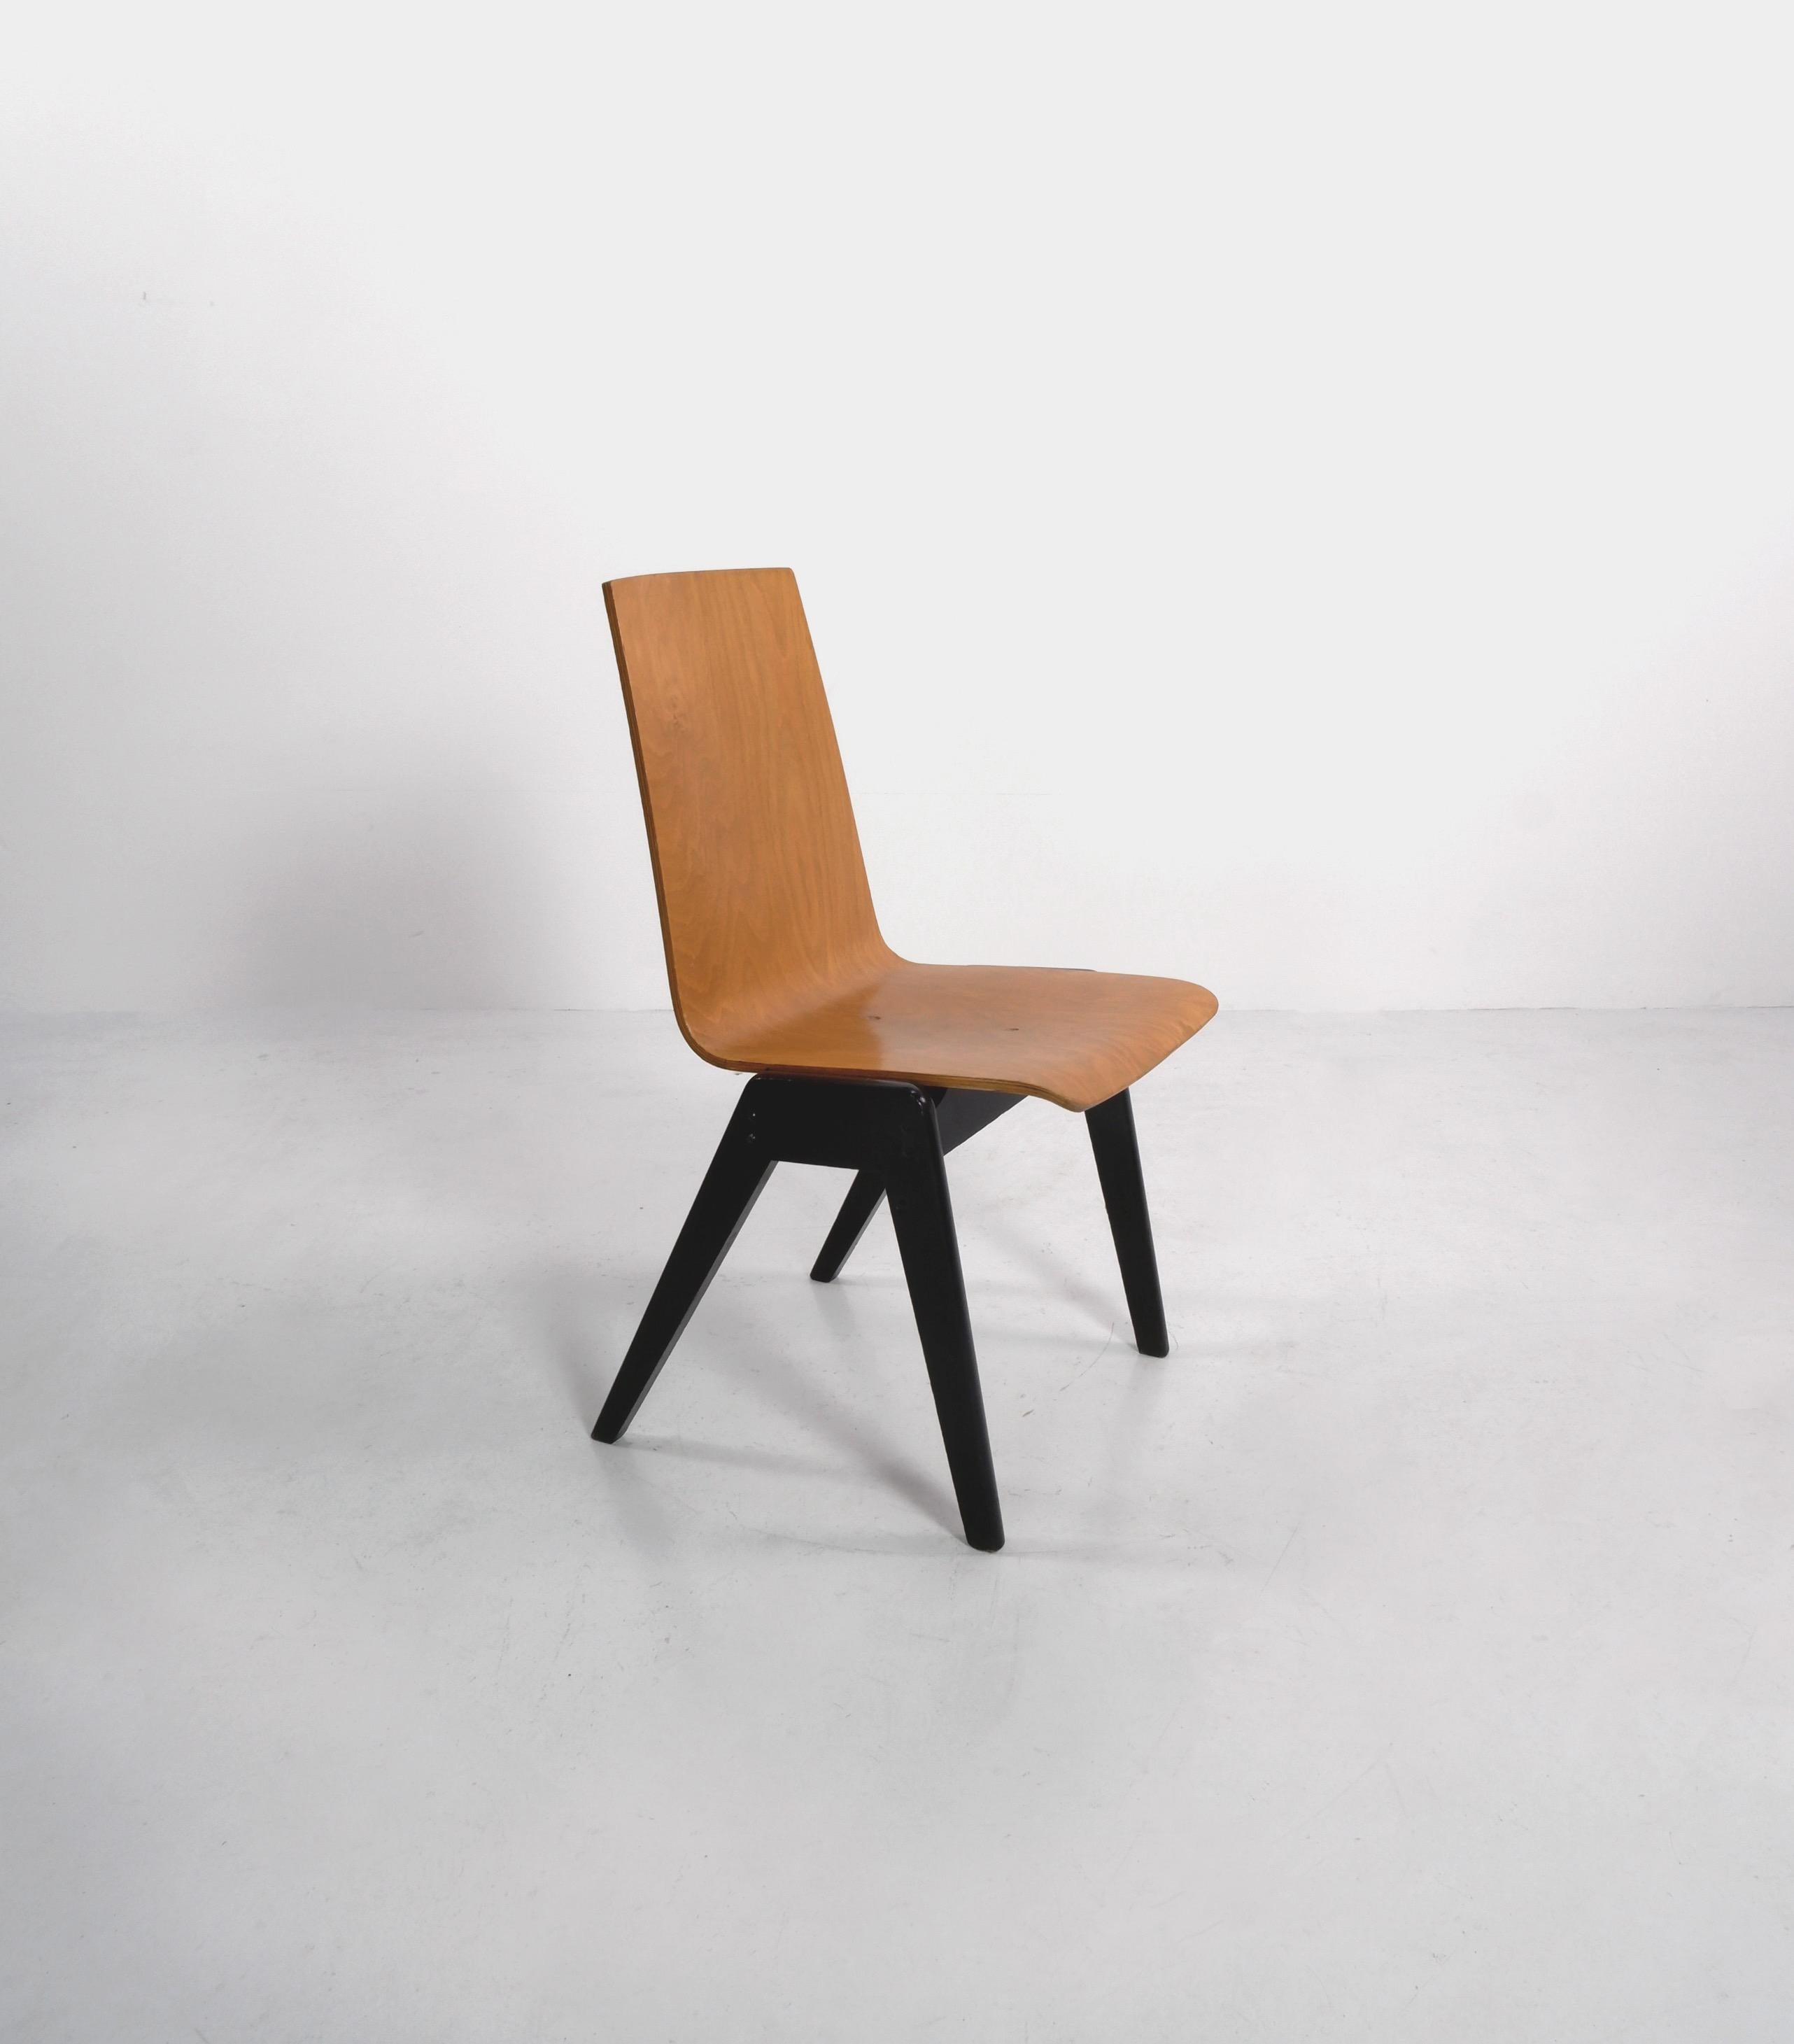 Stapelstühle aus Sperrholz, die dem österreichischen Architekten Roland Rainer zugeschrieben werden. 

Es sind 7 Stühle verfügbar, der Preis gilt pro Stuhl. 

Abmessungen (cm, ca.): 
Höhe: 87
Breite: 48
Tiefe: 55.